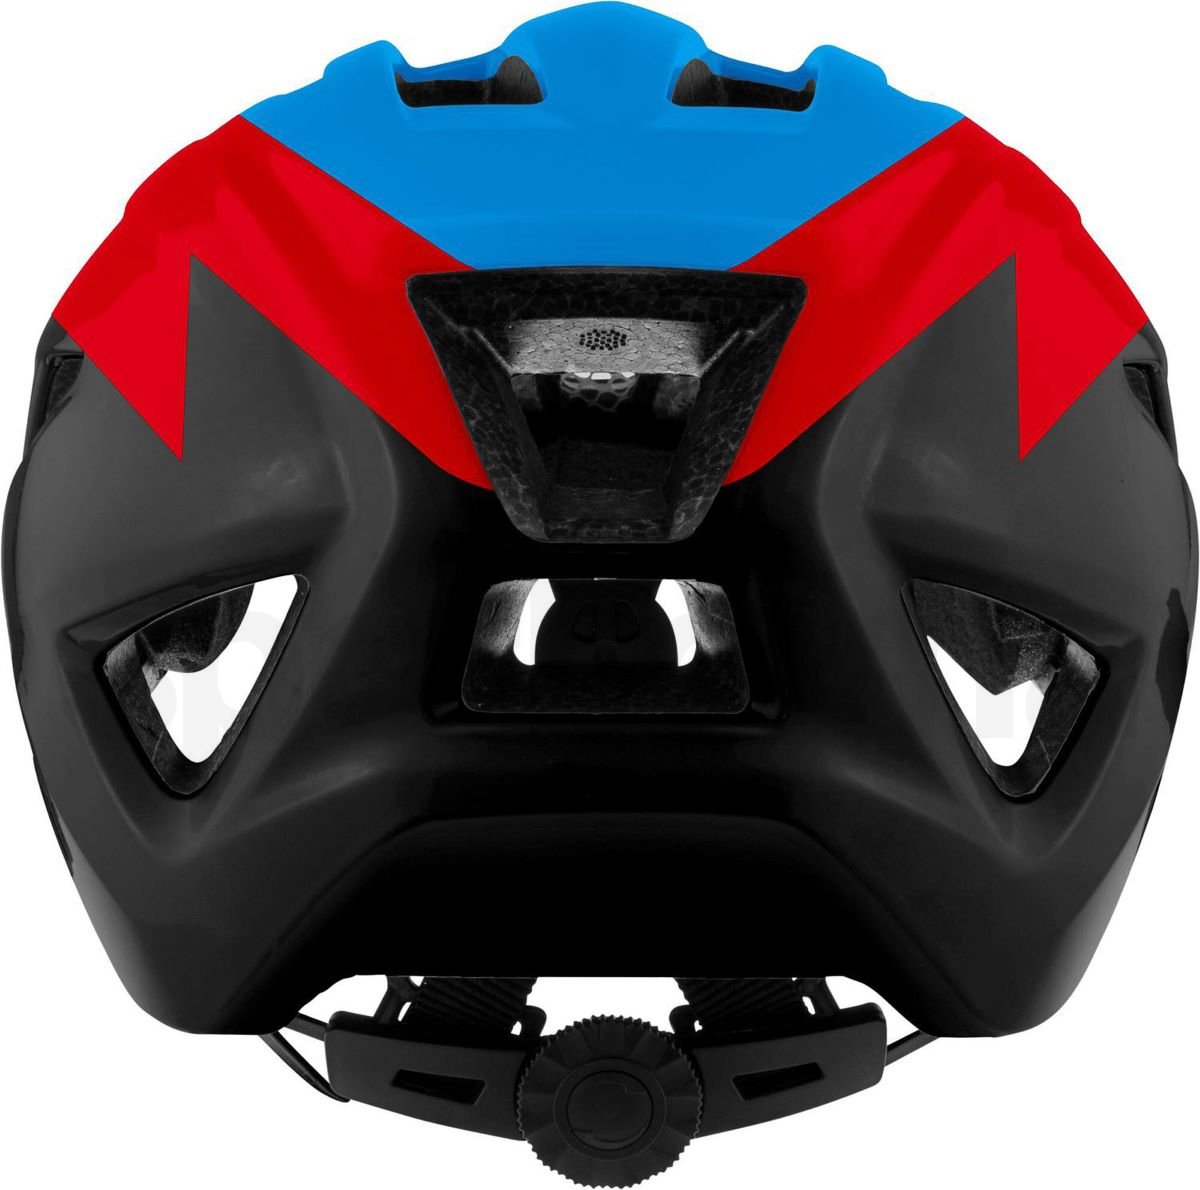 Cyklistická helma Alpina Pico J - modrá/červená